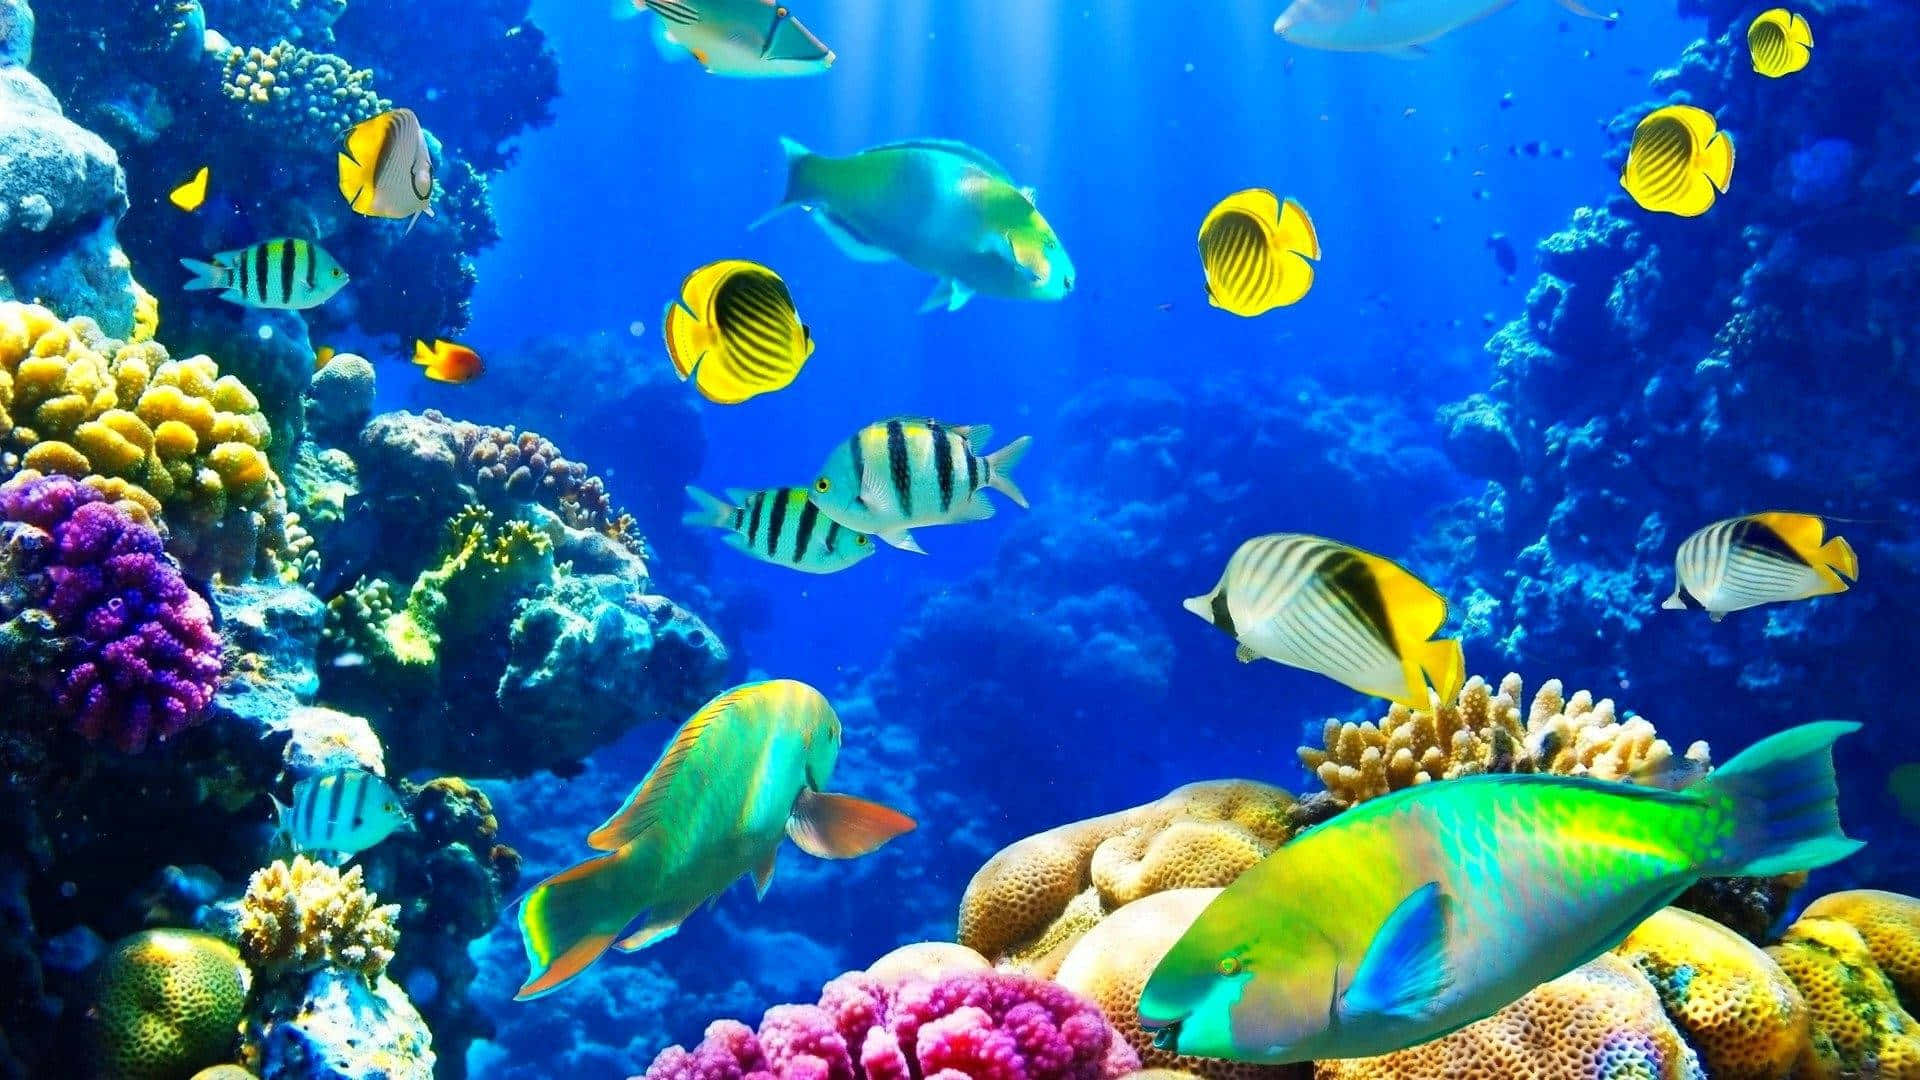 Unoscatto Incredibile Di Un Vivace Reef Di Coralli Sotto La Superficie.